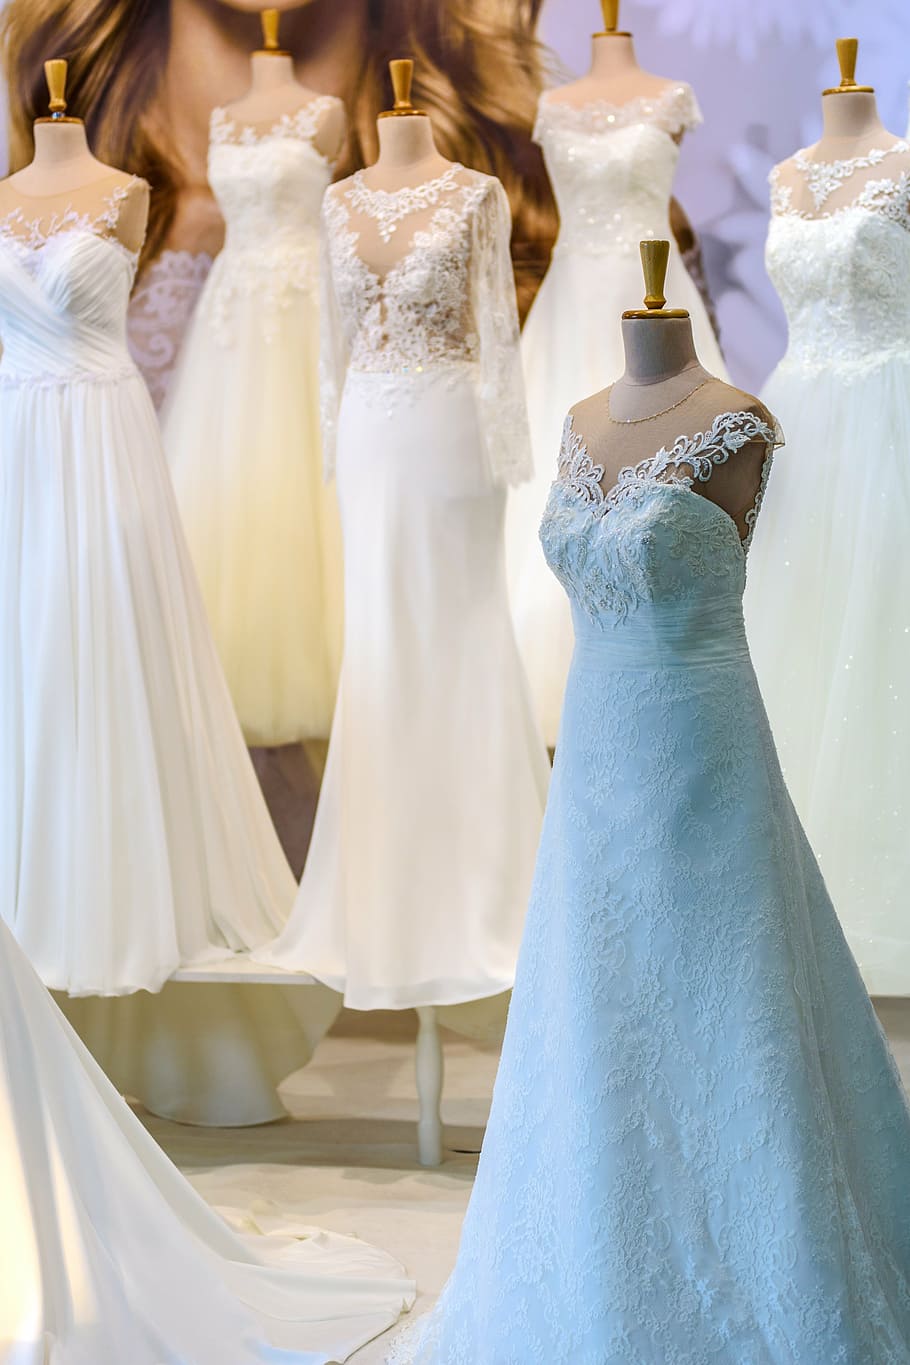 6ウェディングドレス, ウェディングドレスのサロン, 花嫁, 結婚式, ウェディングドレス, 式, 採用, デザイン, 美しい, イベント